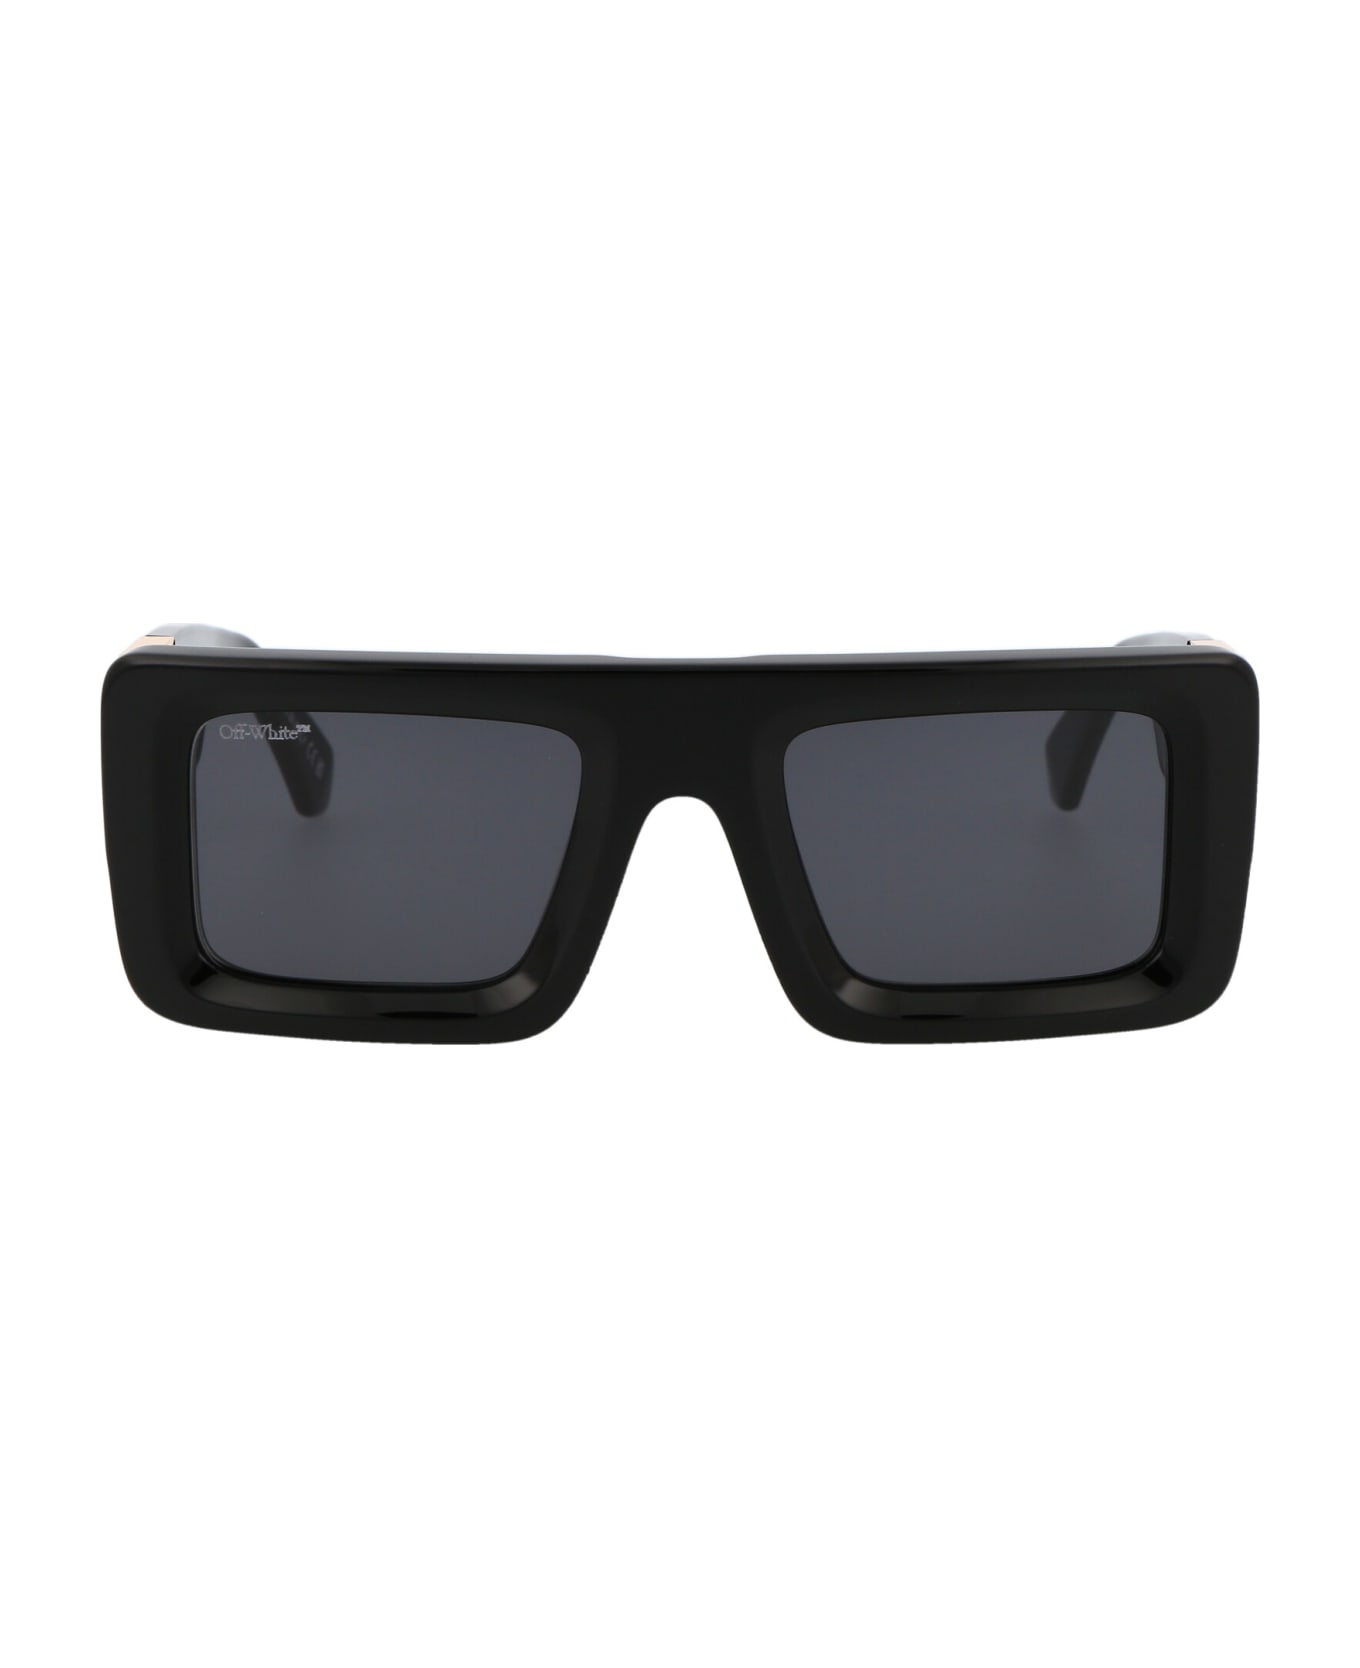 Off-White Leonardo Sunglasses - 1007 BLACK